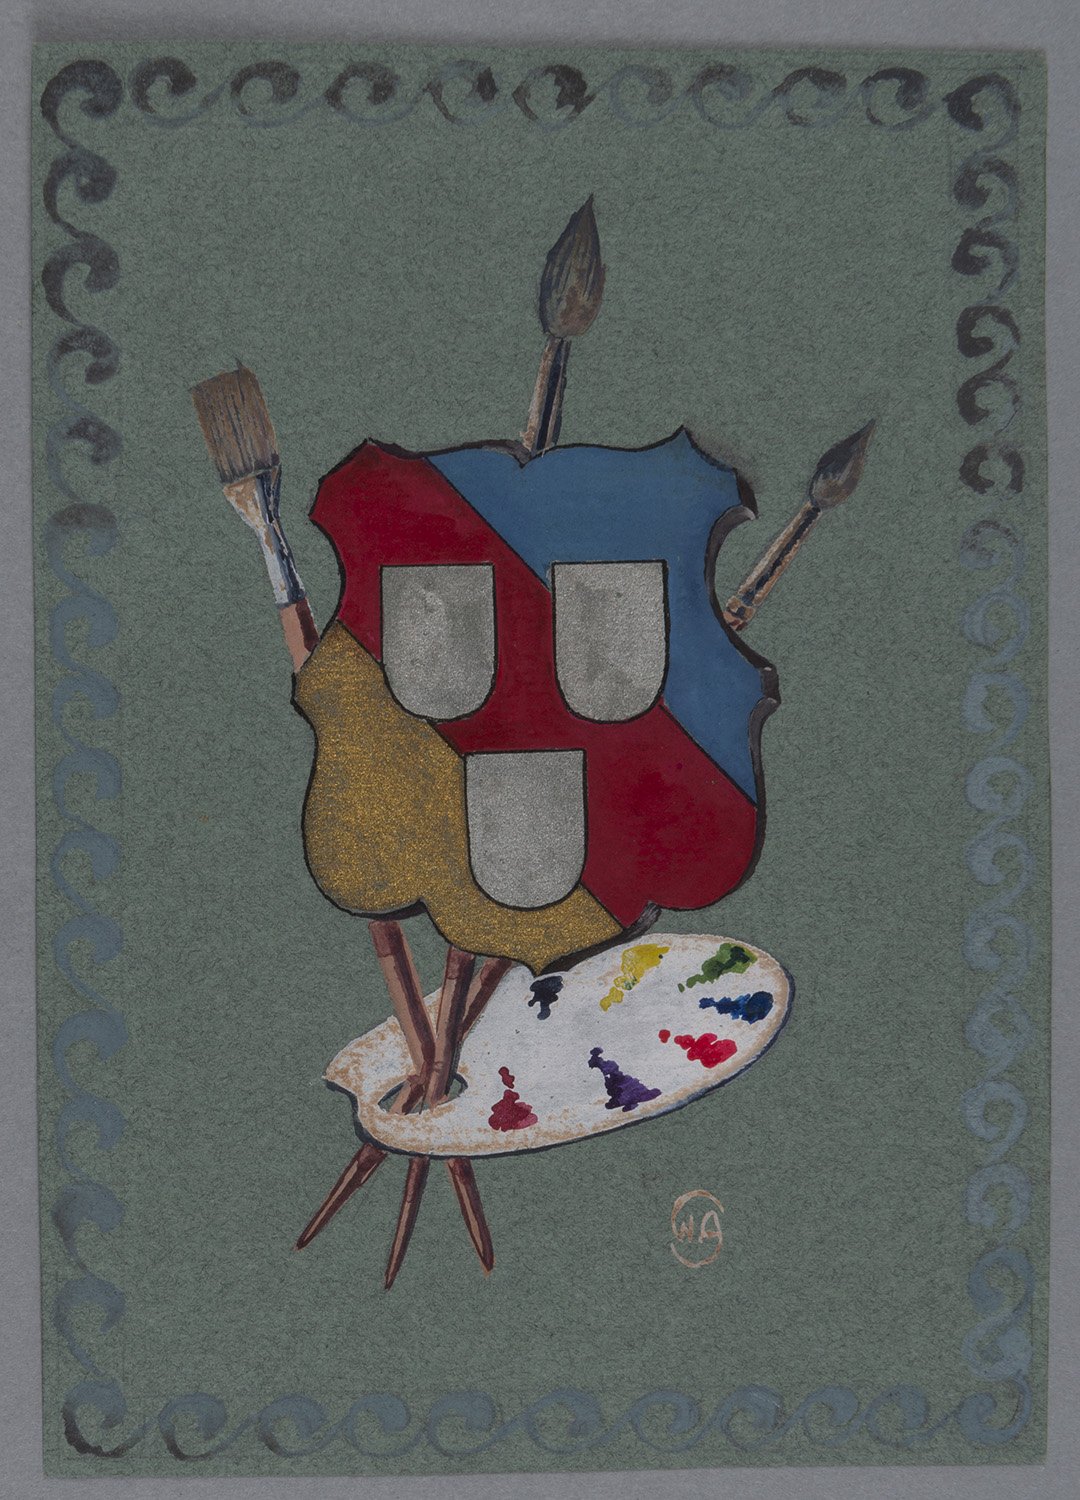 Malerutensilien und Wappen (eines Malers?) (Landesgeschichtliche Vereinigung für die Mark Brandenburg e.V., Archiv CC BY)